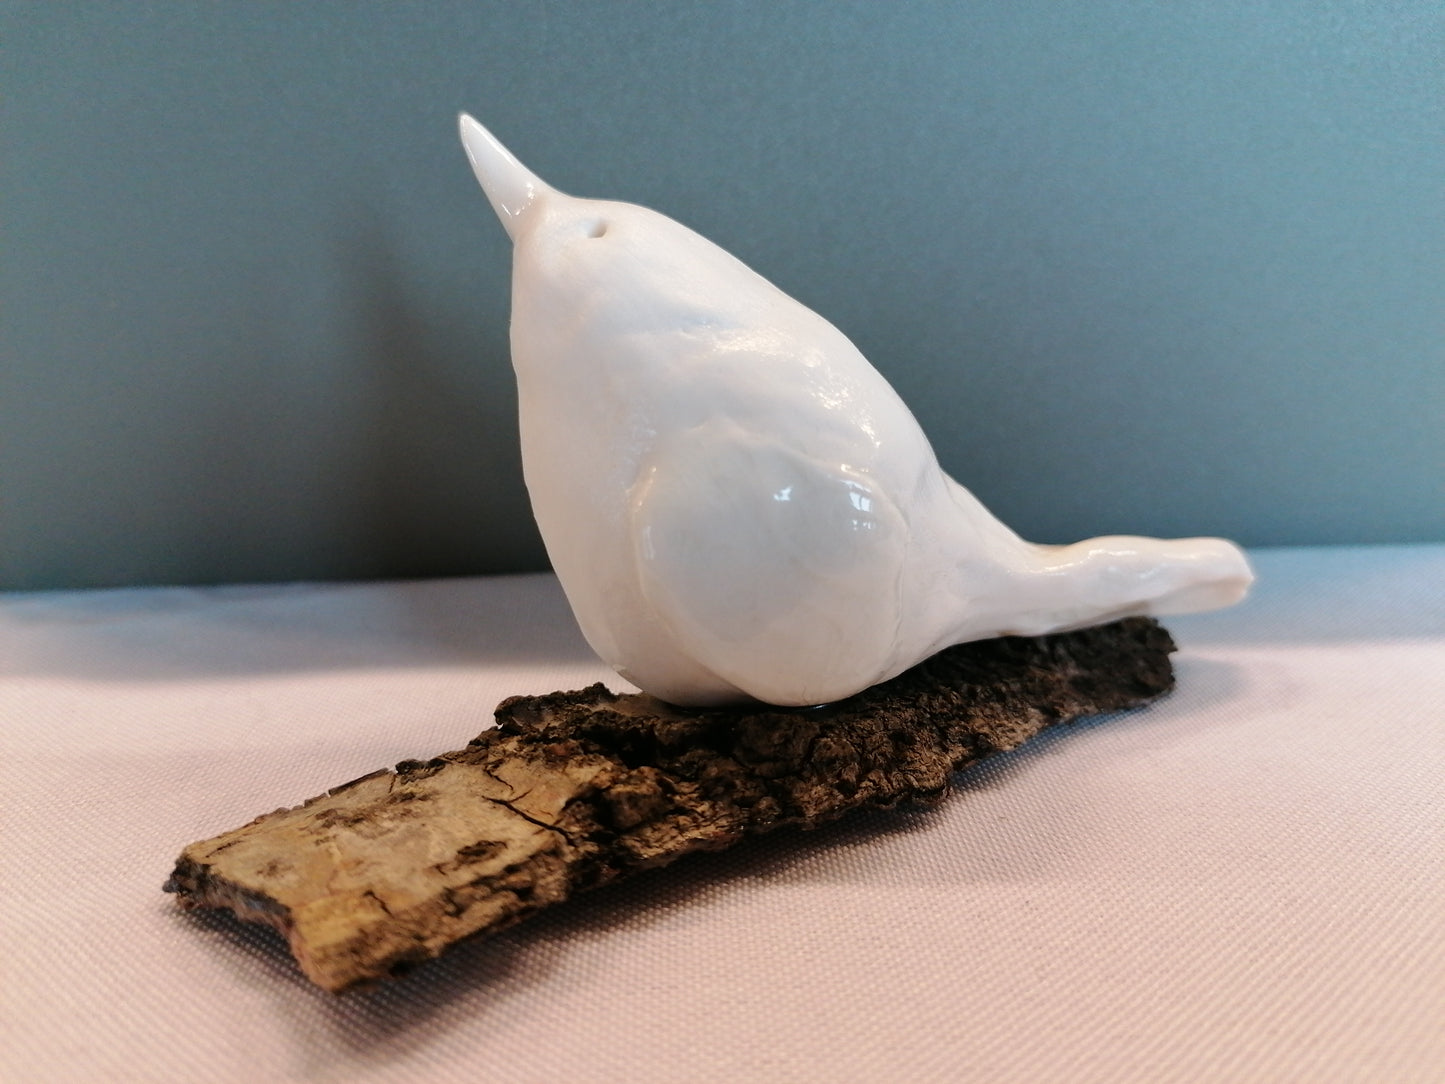 Oiseau de porcelaine n °10 by Sandrine De Zorzi